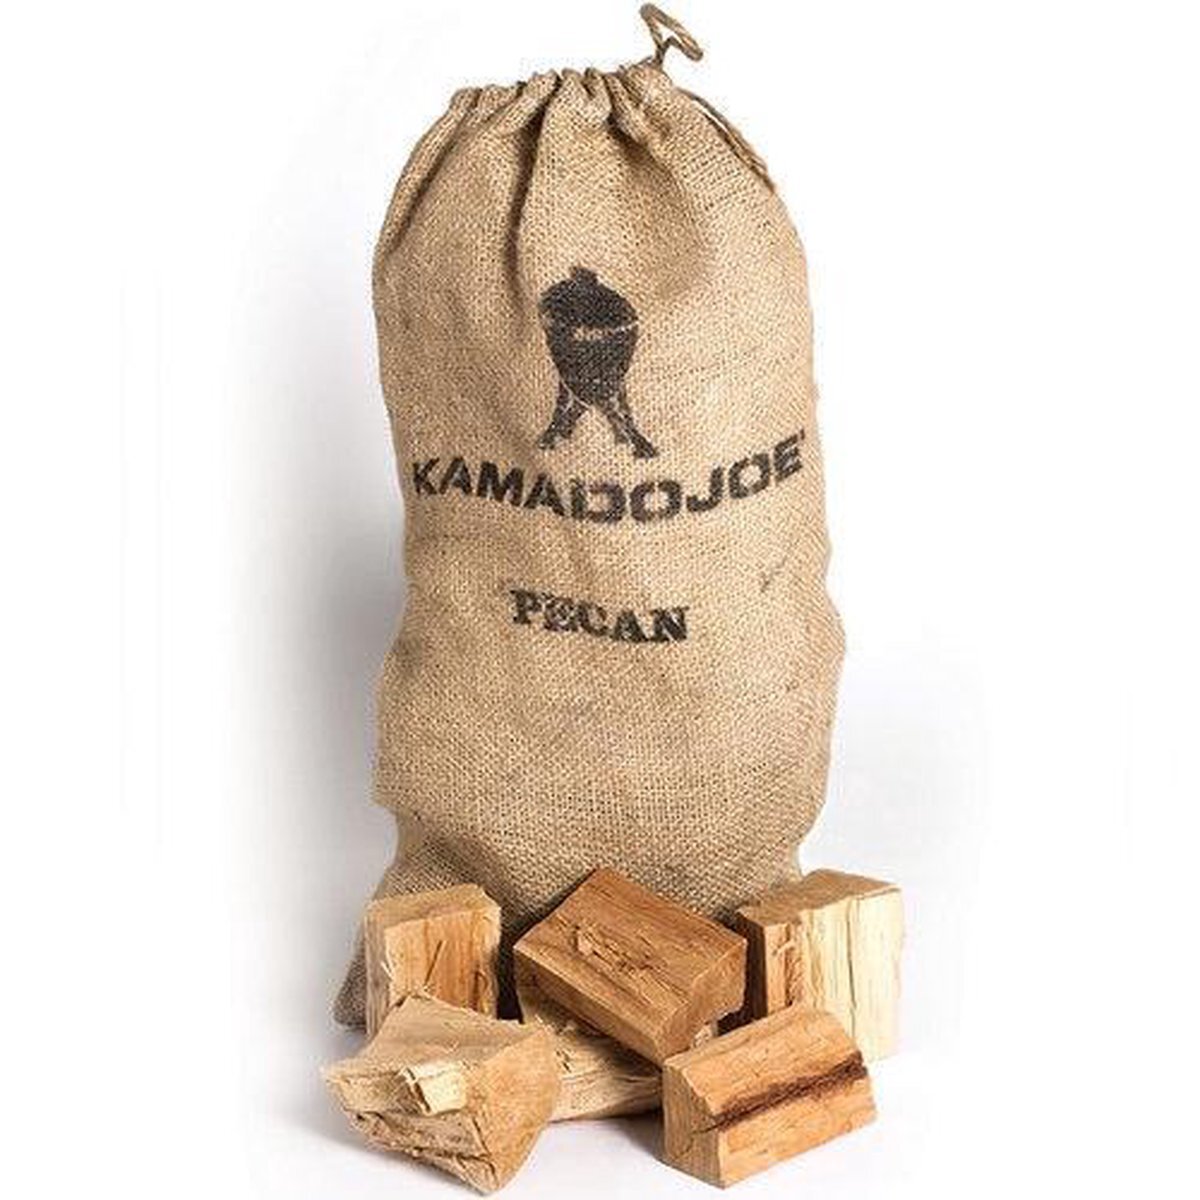 Kamado Joe Pecannoot (houtbrokken) 4,5 kg rook houtsnippers